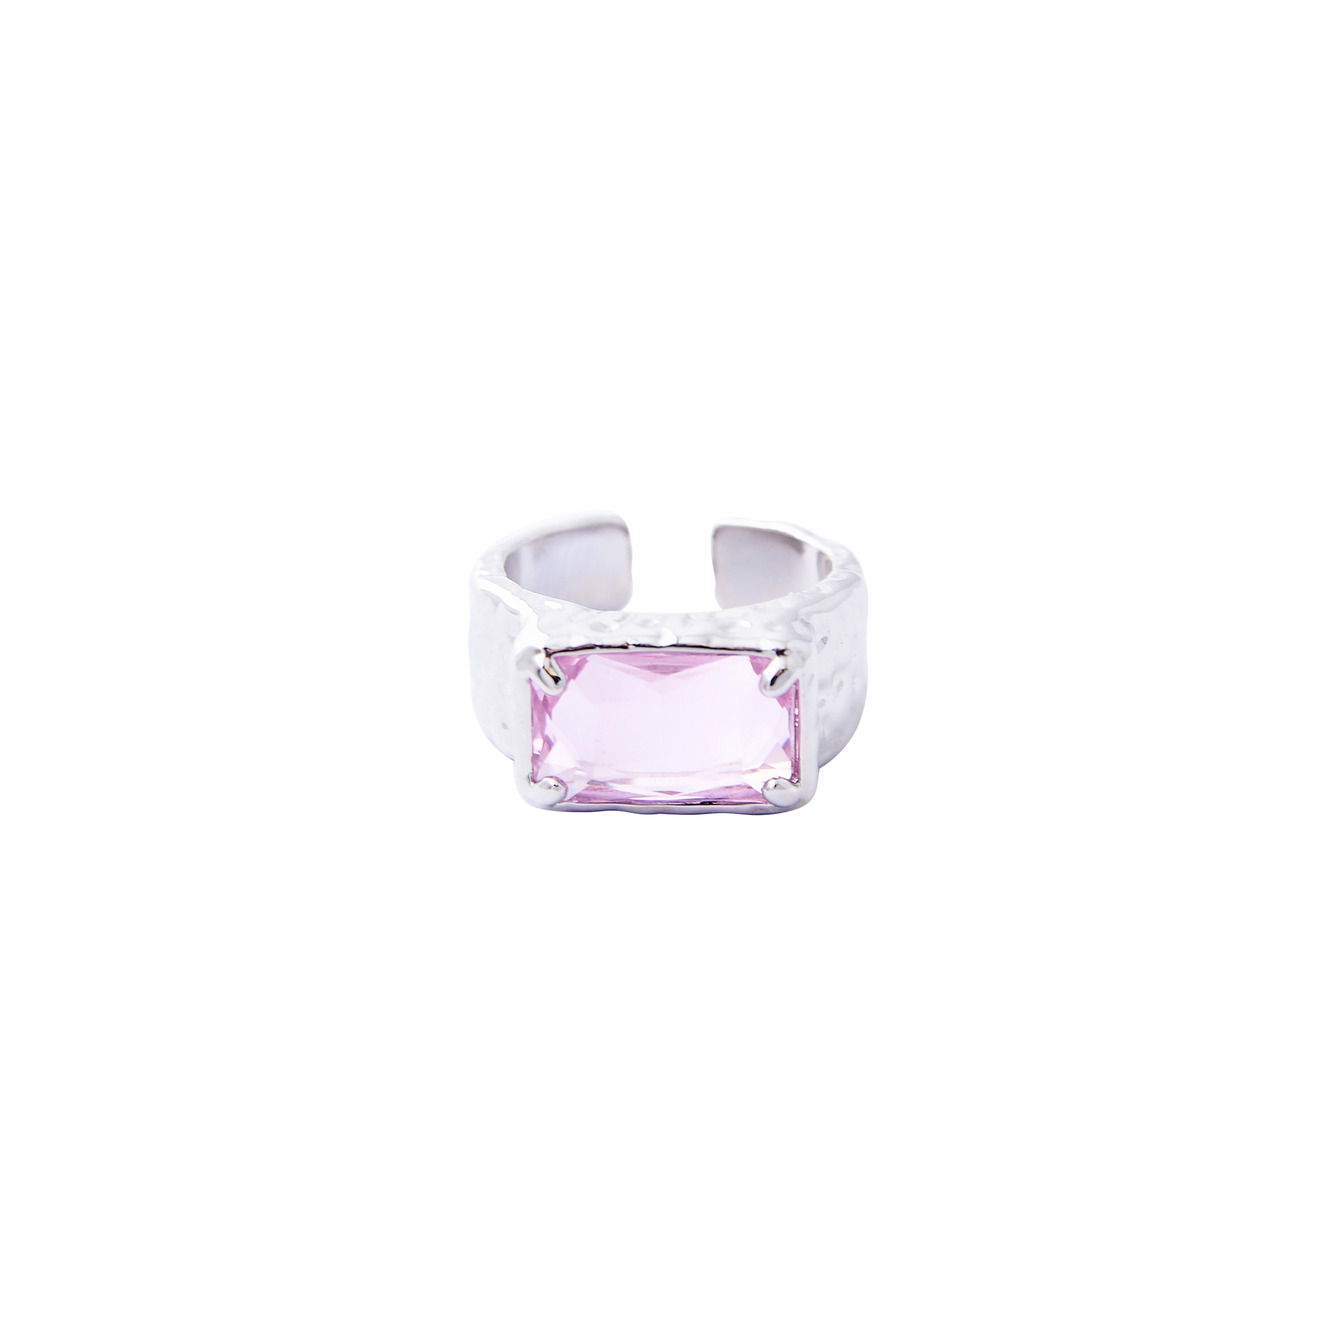 Herald Percy Серебристое кольцо с крупным розовым кристаллом herald percy золотистая цепочка с подвеской прямоугольником с кристаллом